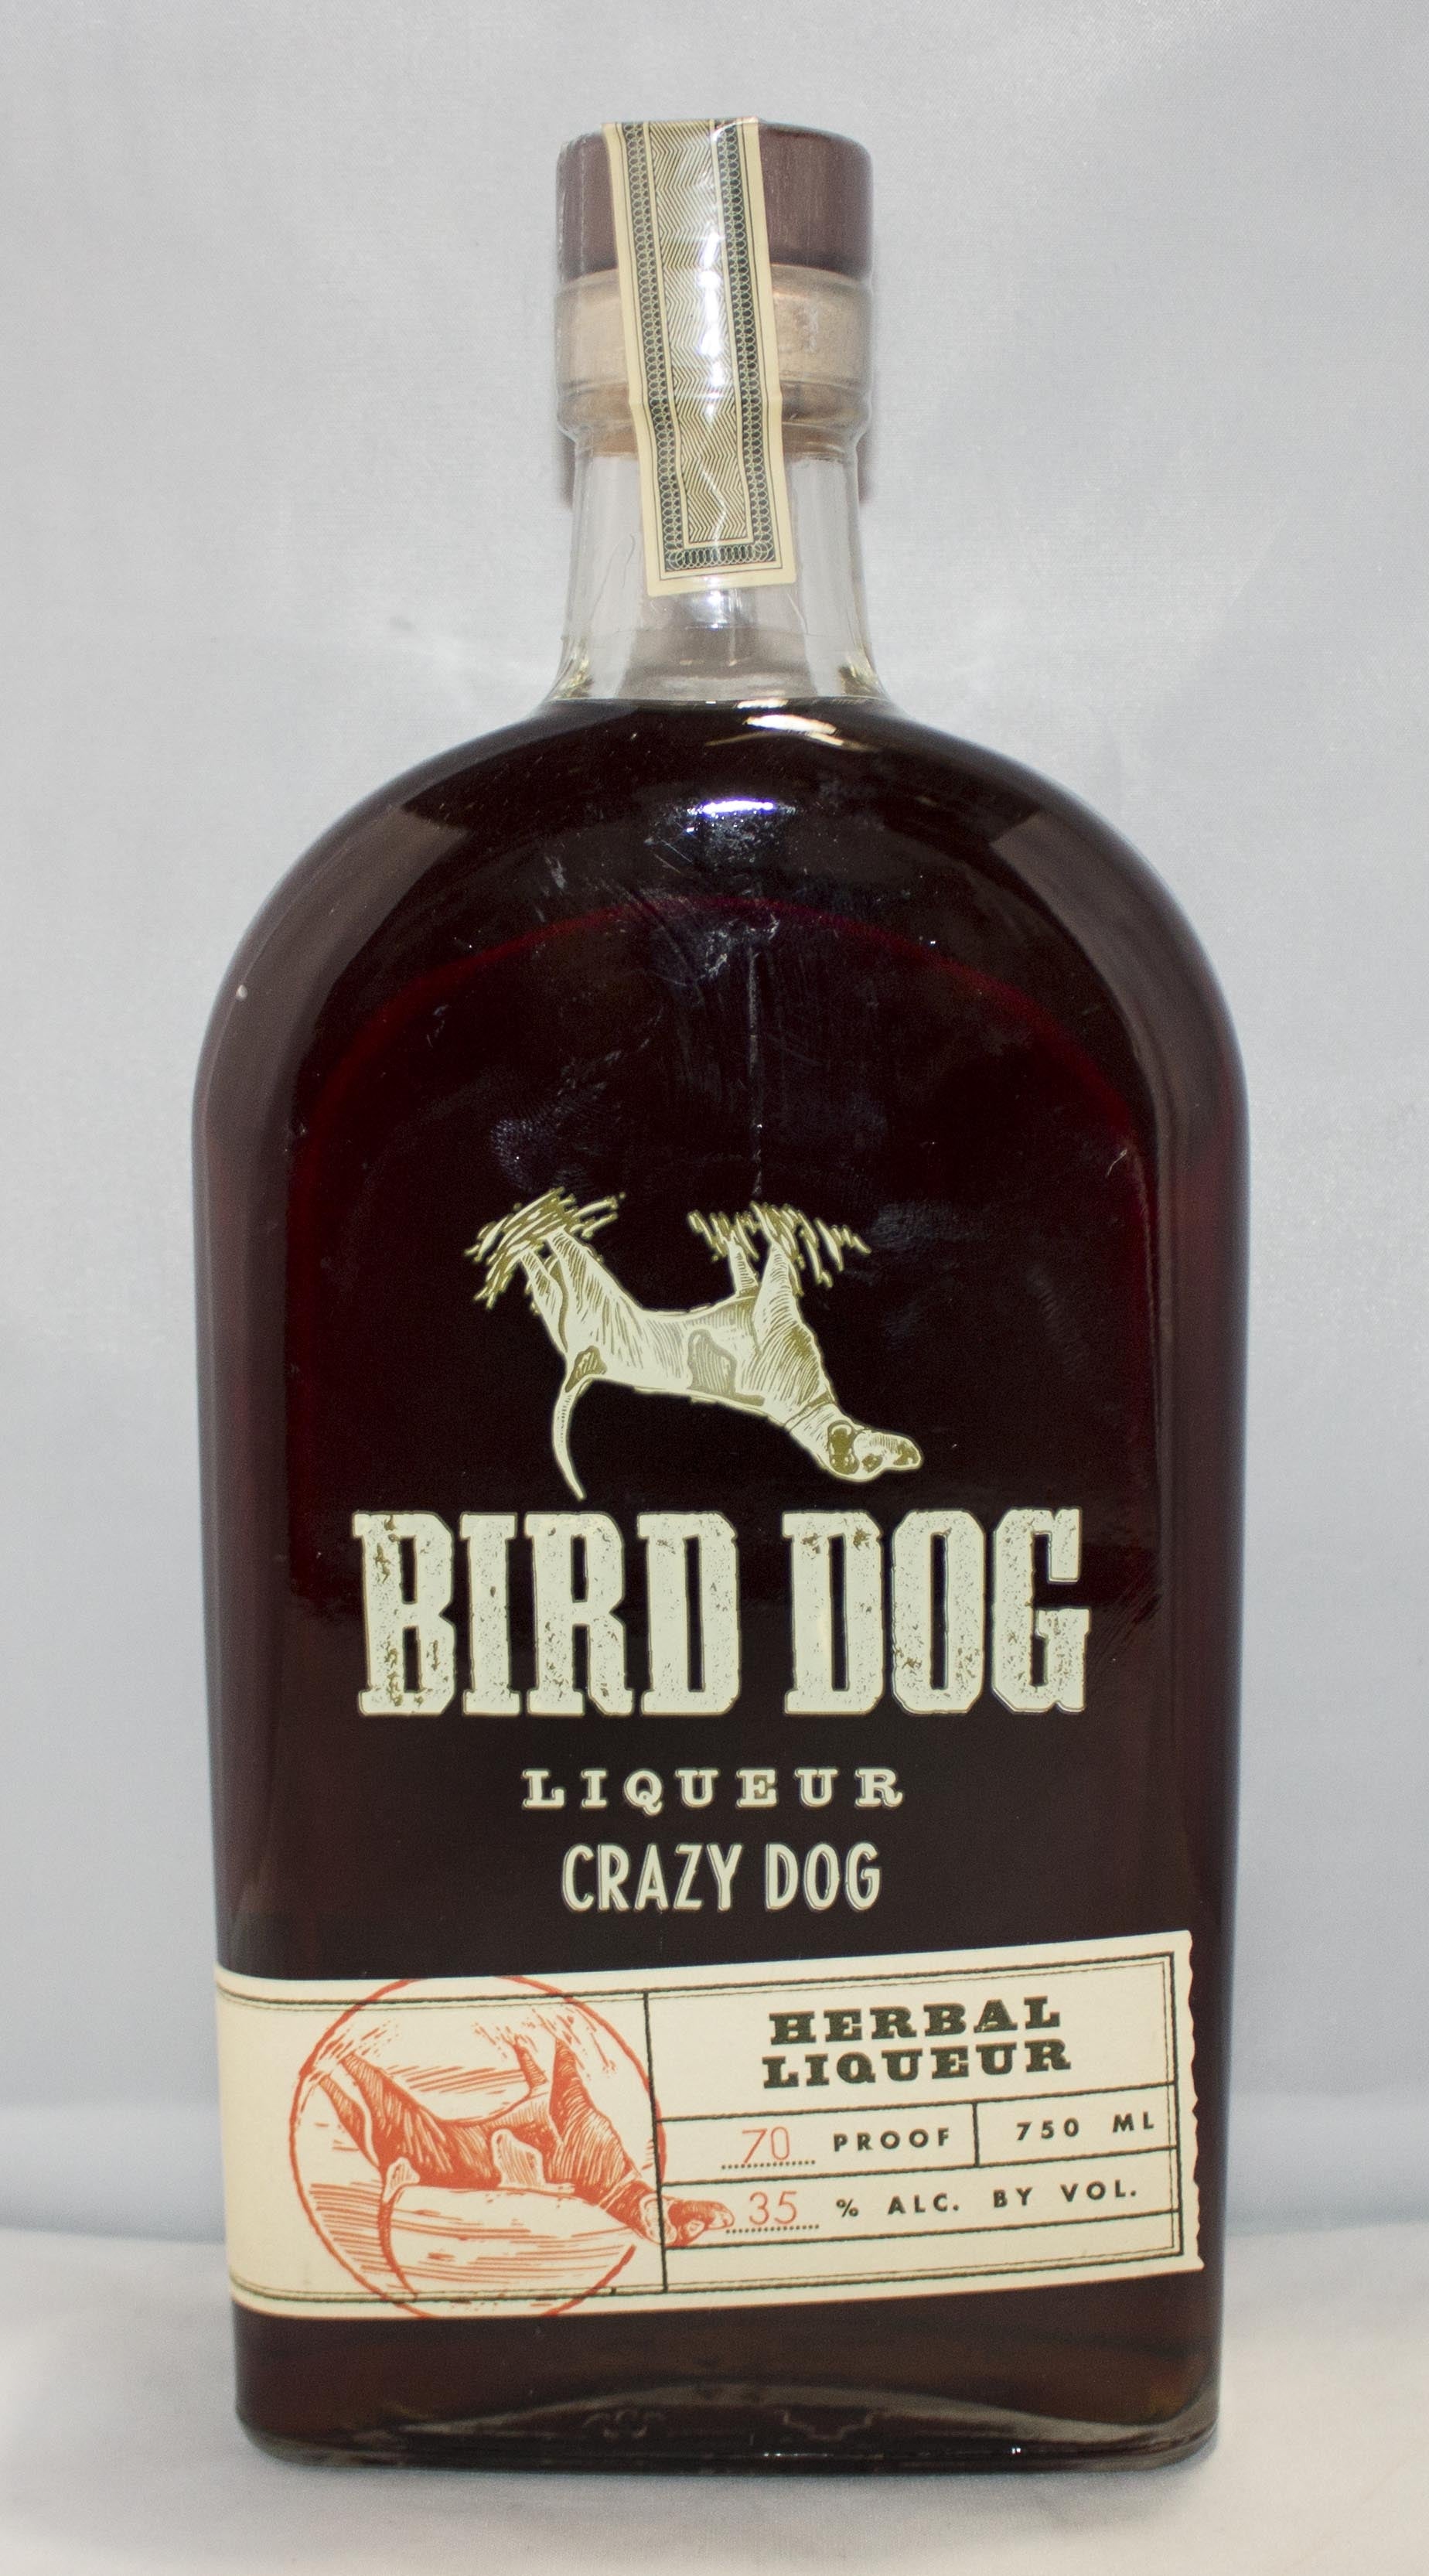 BIRD DOG CRAZY DOG LIQUEUR HERBAL 750ML - Remedy Liquor